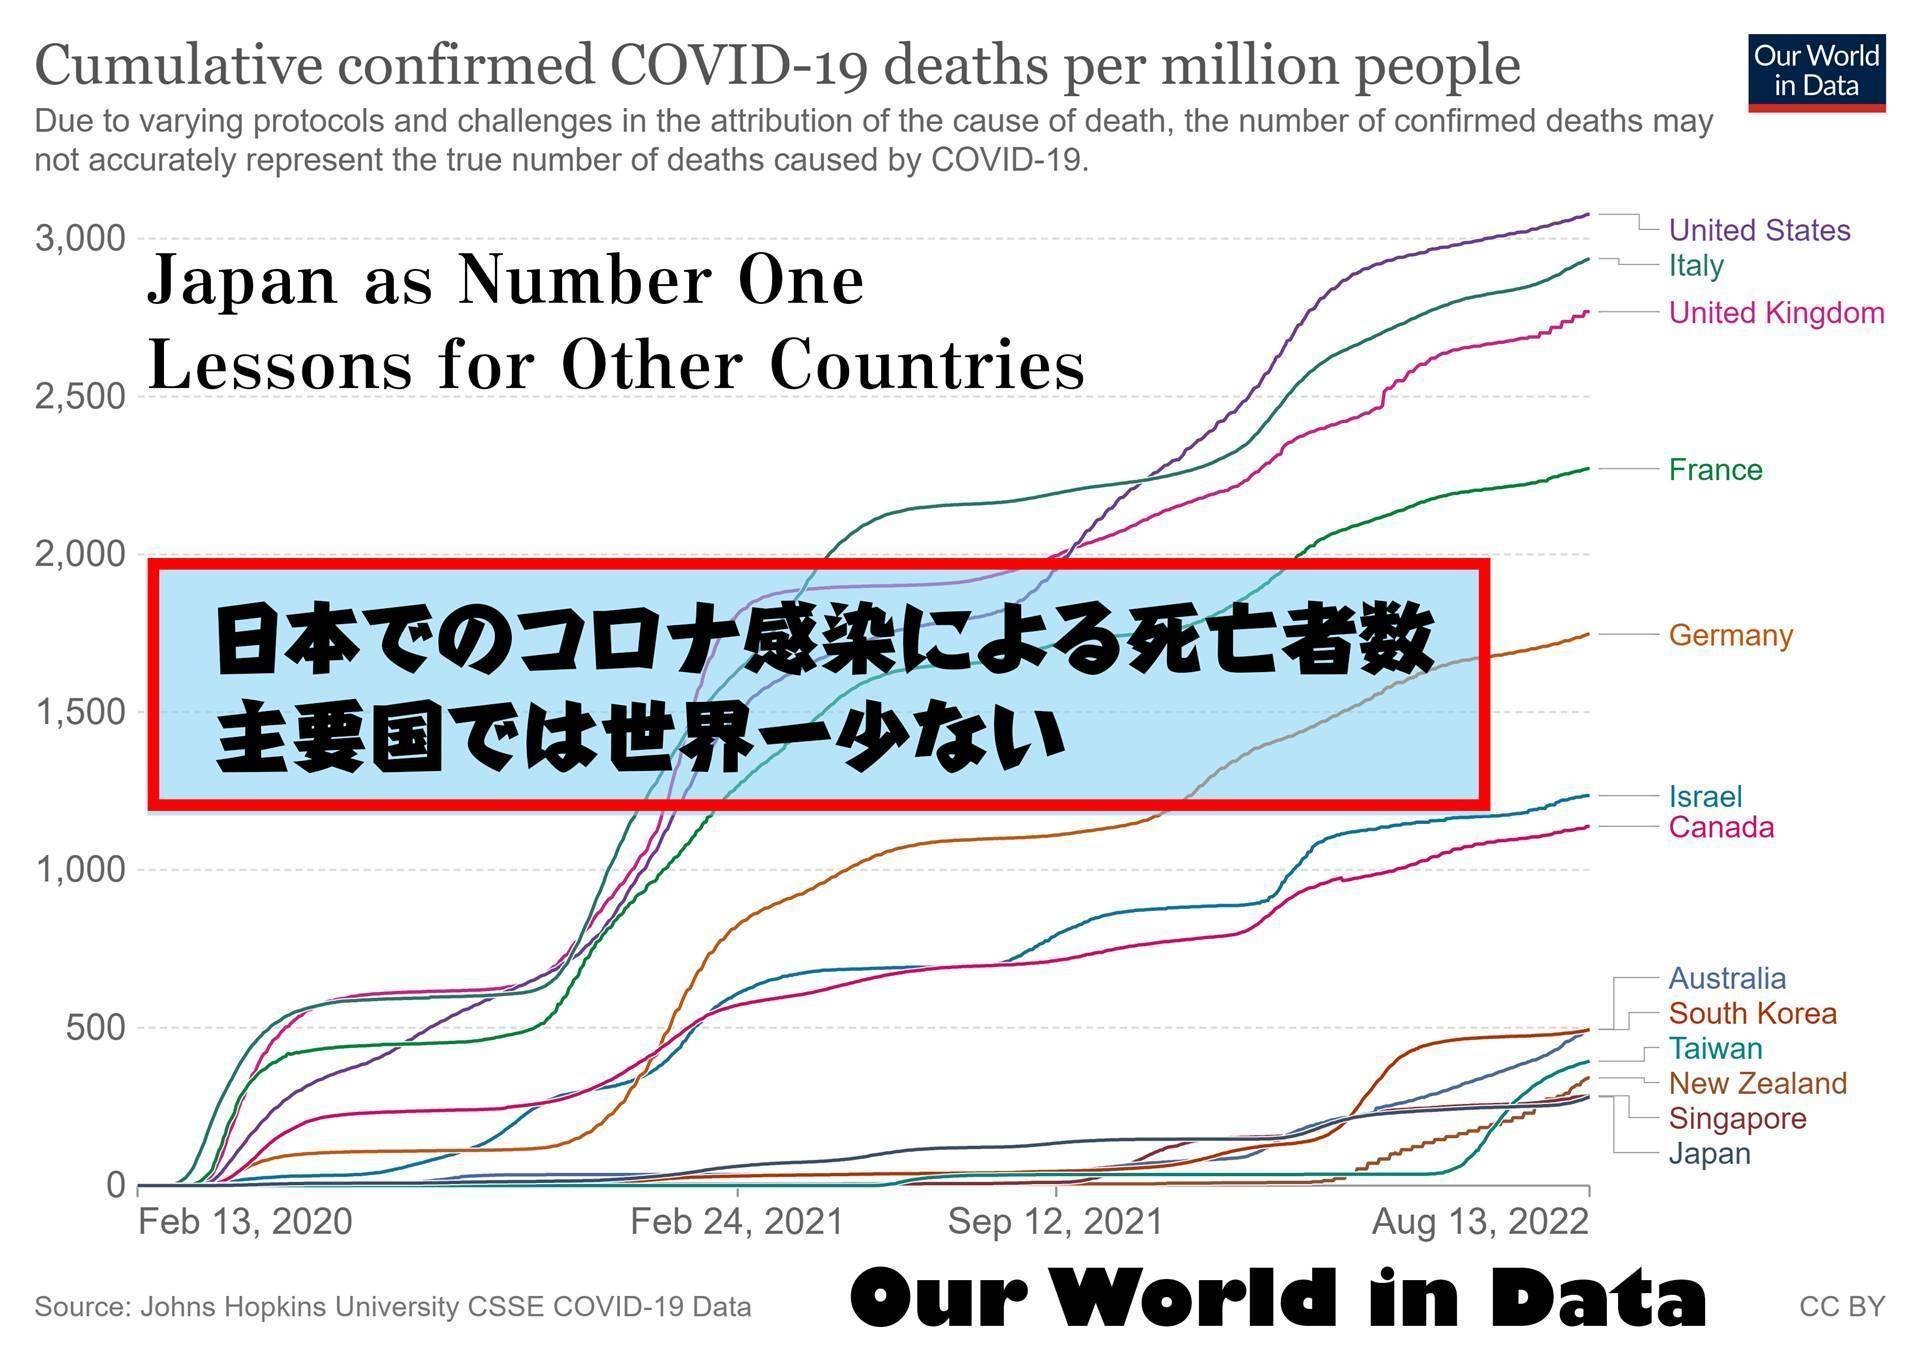 日本の安倍晋三政権の実績 生命：コロナ死亡者数 世界最低水準 生命を救う：コロナパンデミック コロナ禍でのCovid-19感染による死者数は主要国 先進国で世界最低水準 健康を保つ：コロナ感染者数 人口比で世界最低水準・日本は常時 圧倒的に少ないCovid-19感染者数